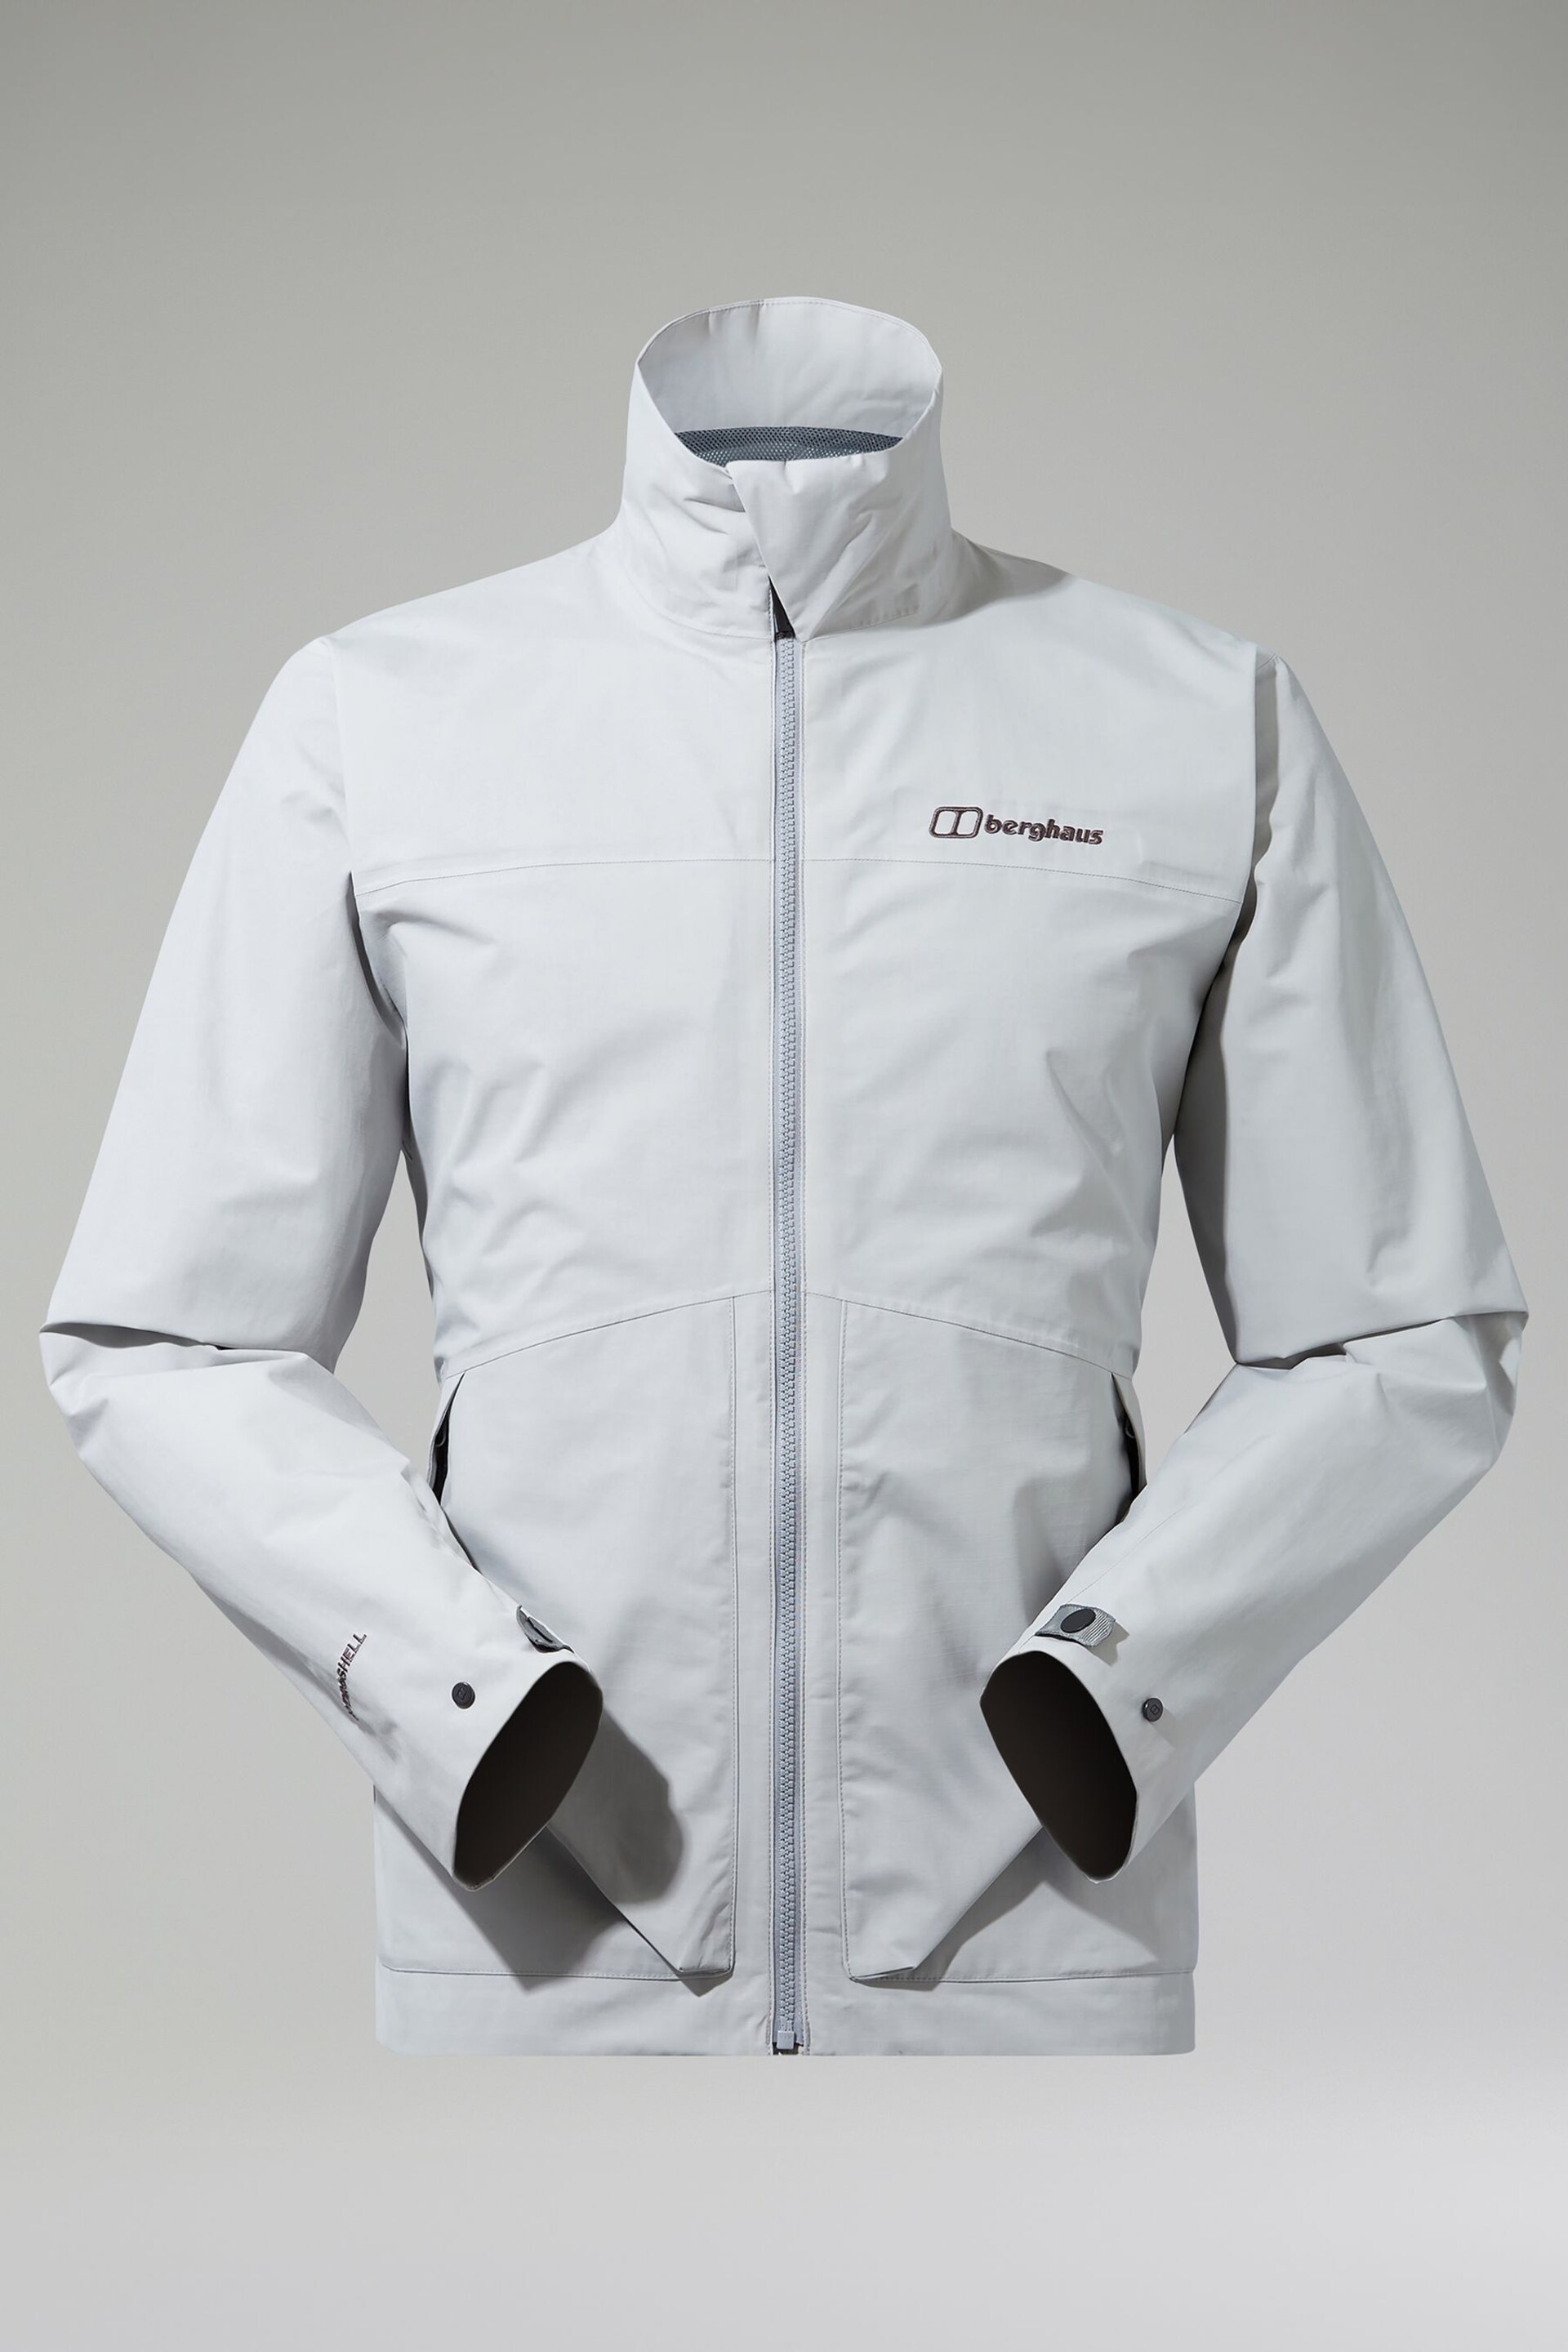 Berghaus Woodwalk Waterproof Jacket - Image 5 of 6